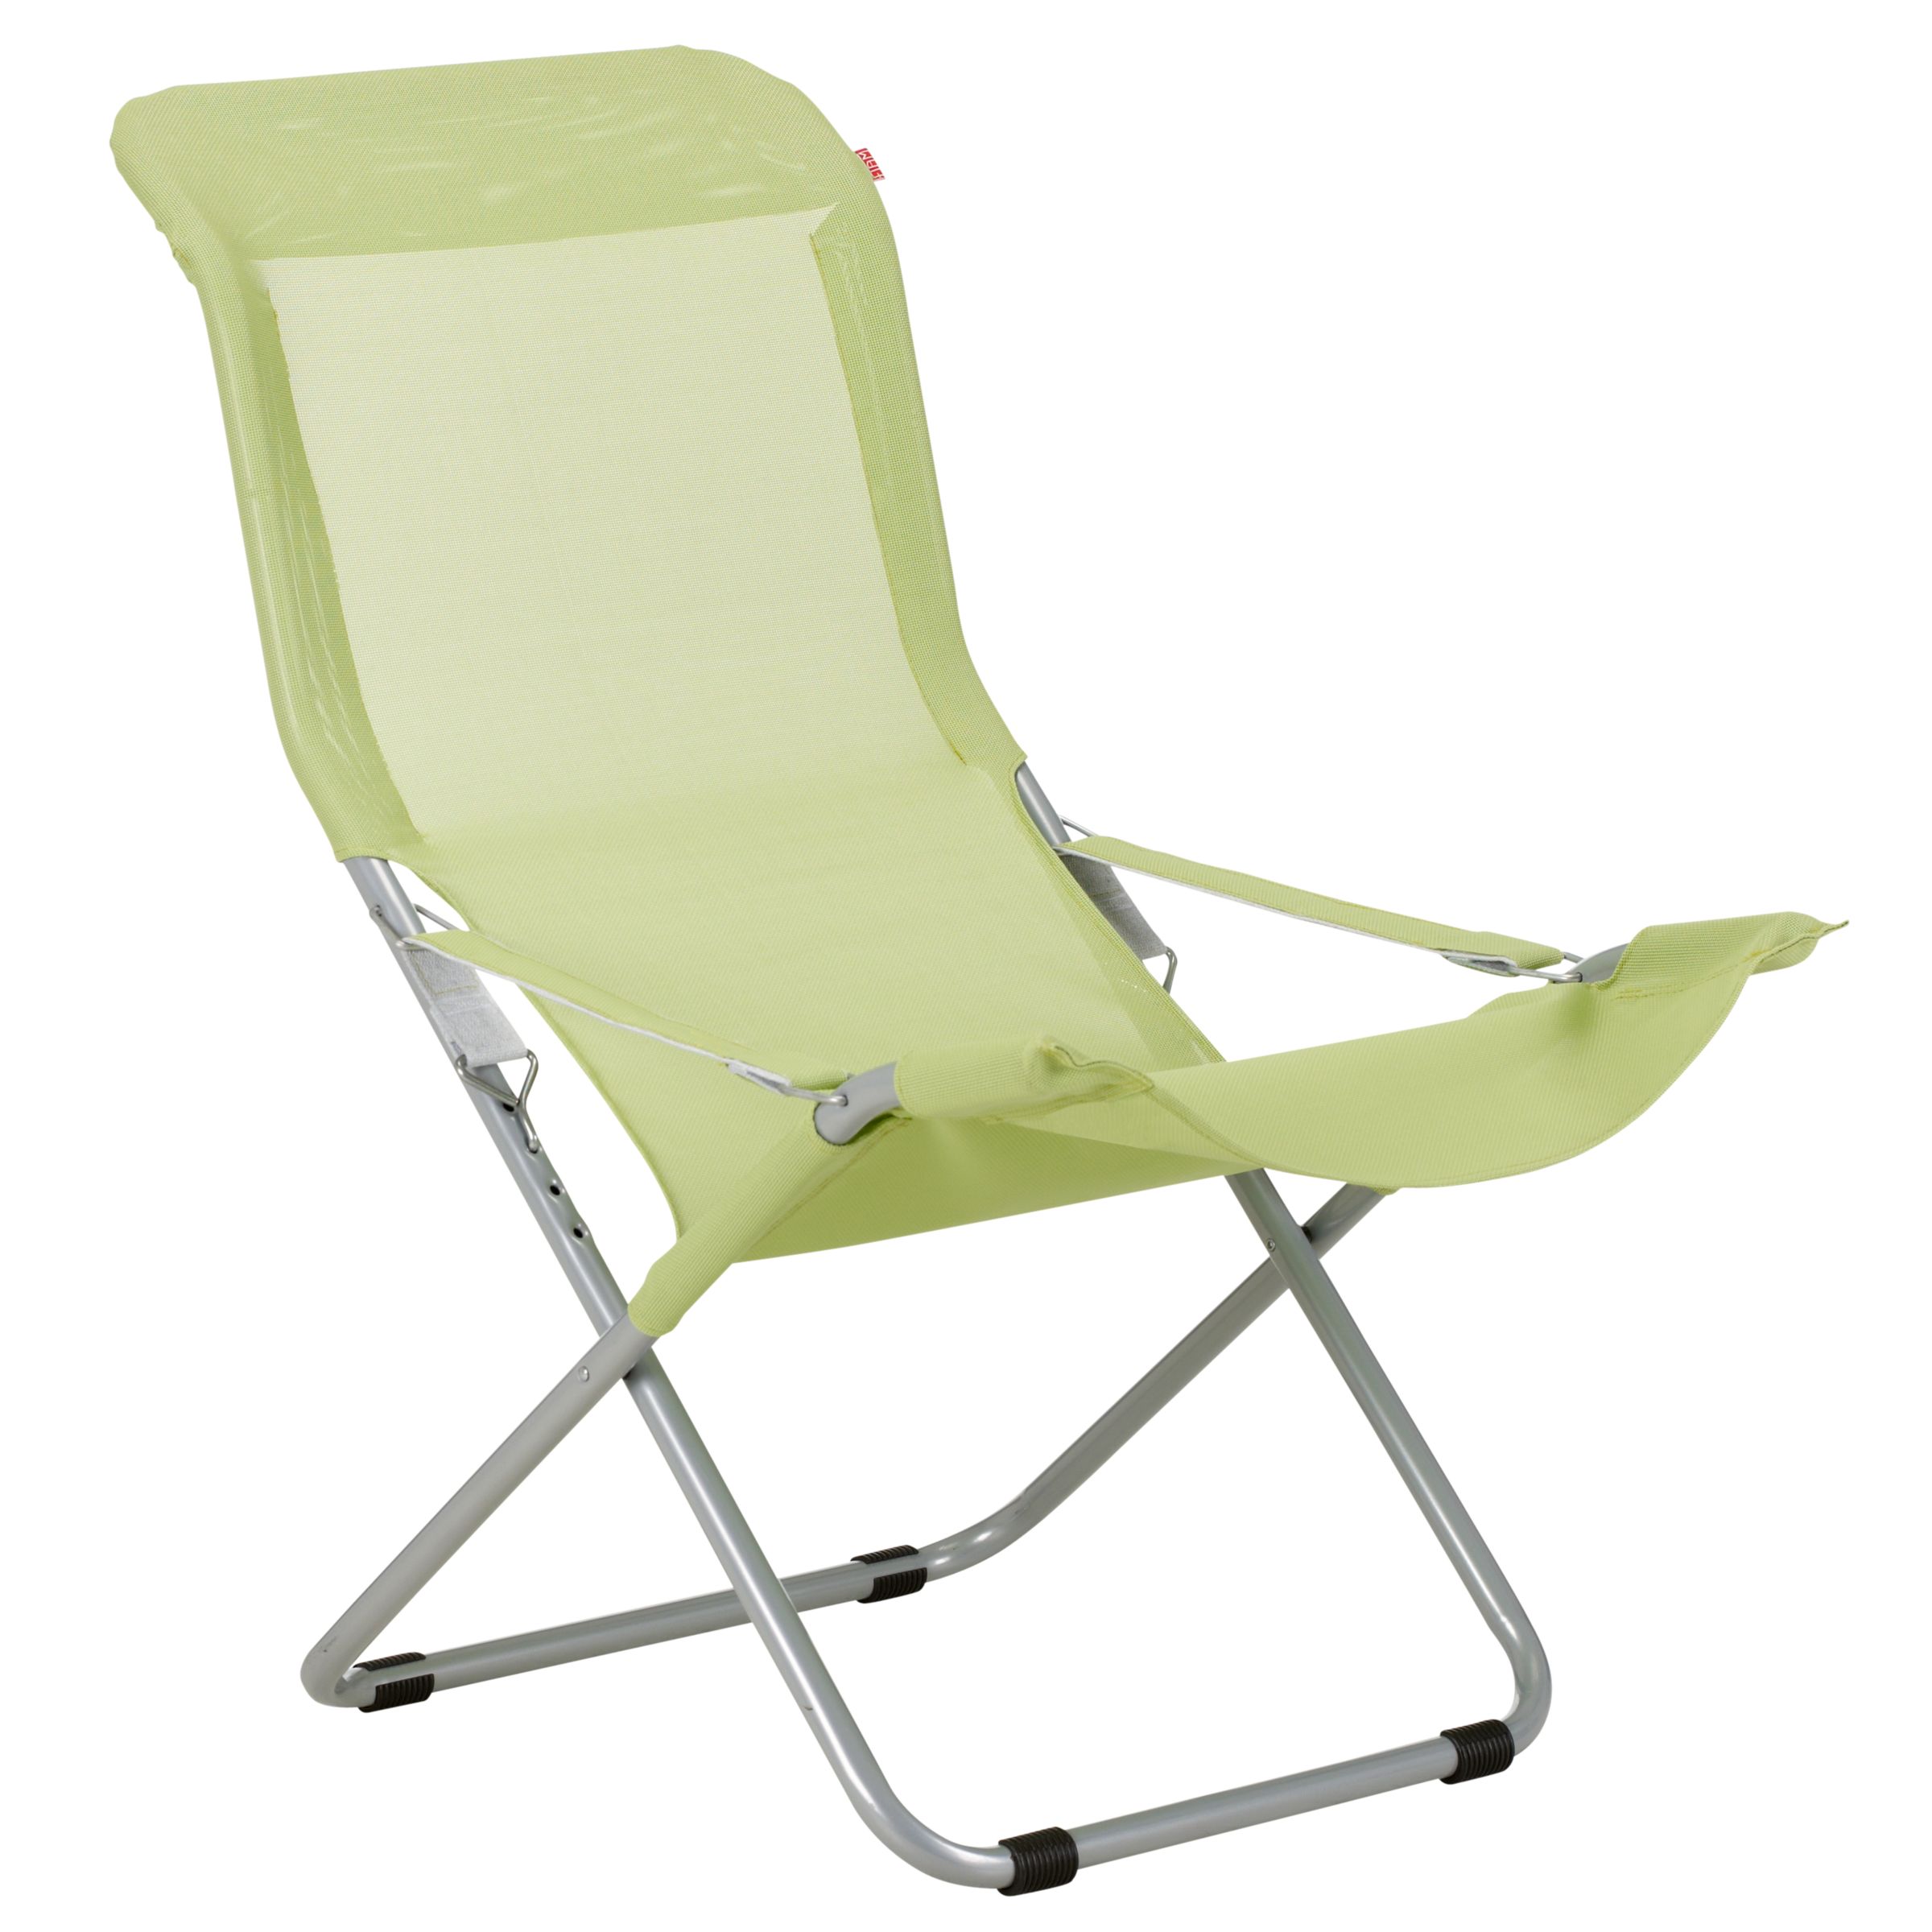 Fiesta Beach Chair, Leaf